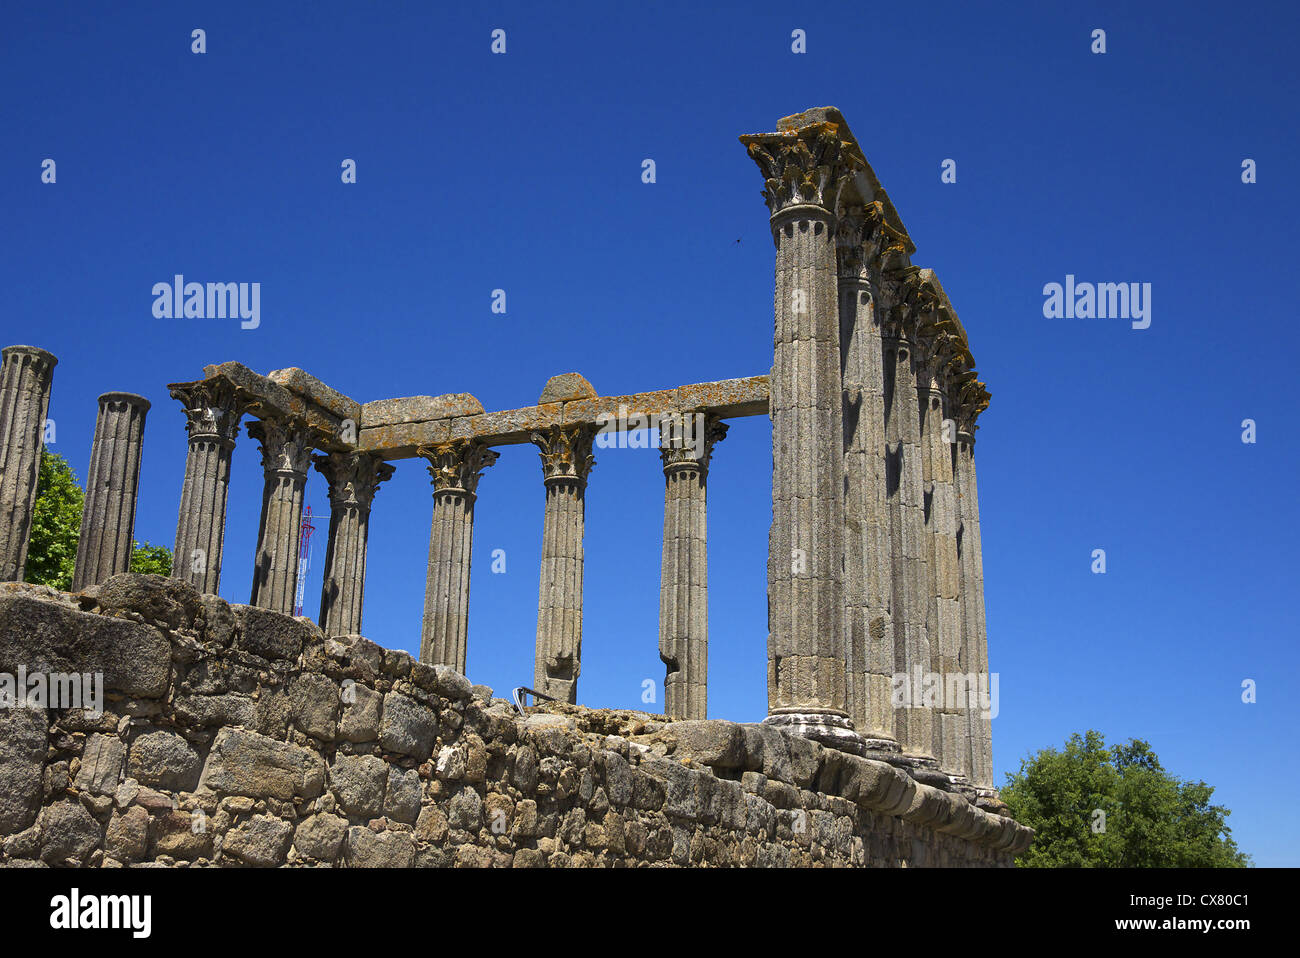 Ruins of the Roman temple Conde Vila Flor in Evora, Portugal. Stock Photo